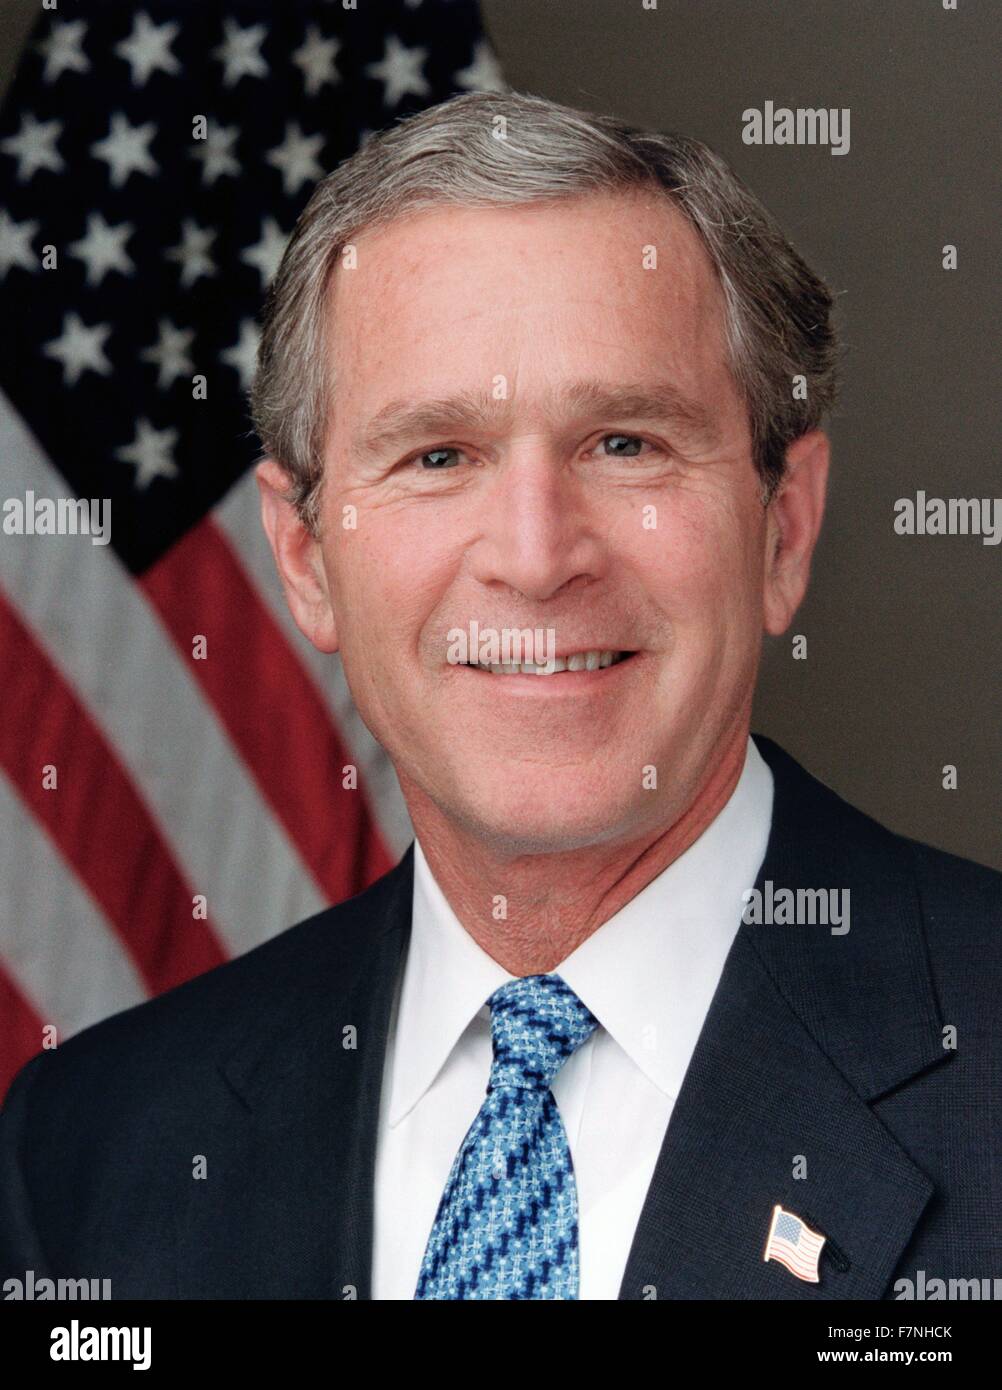 George Walker Bush (né le 6 juillet 1946) Président des États-Unis de 2001 à 2009, et le 46e gouverneur du Texas de 1995 à 2000. Banque D'Images